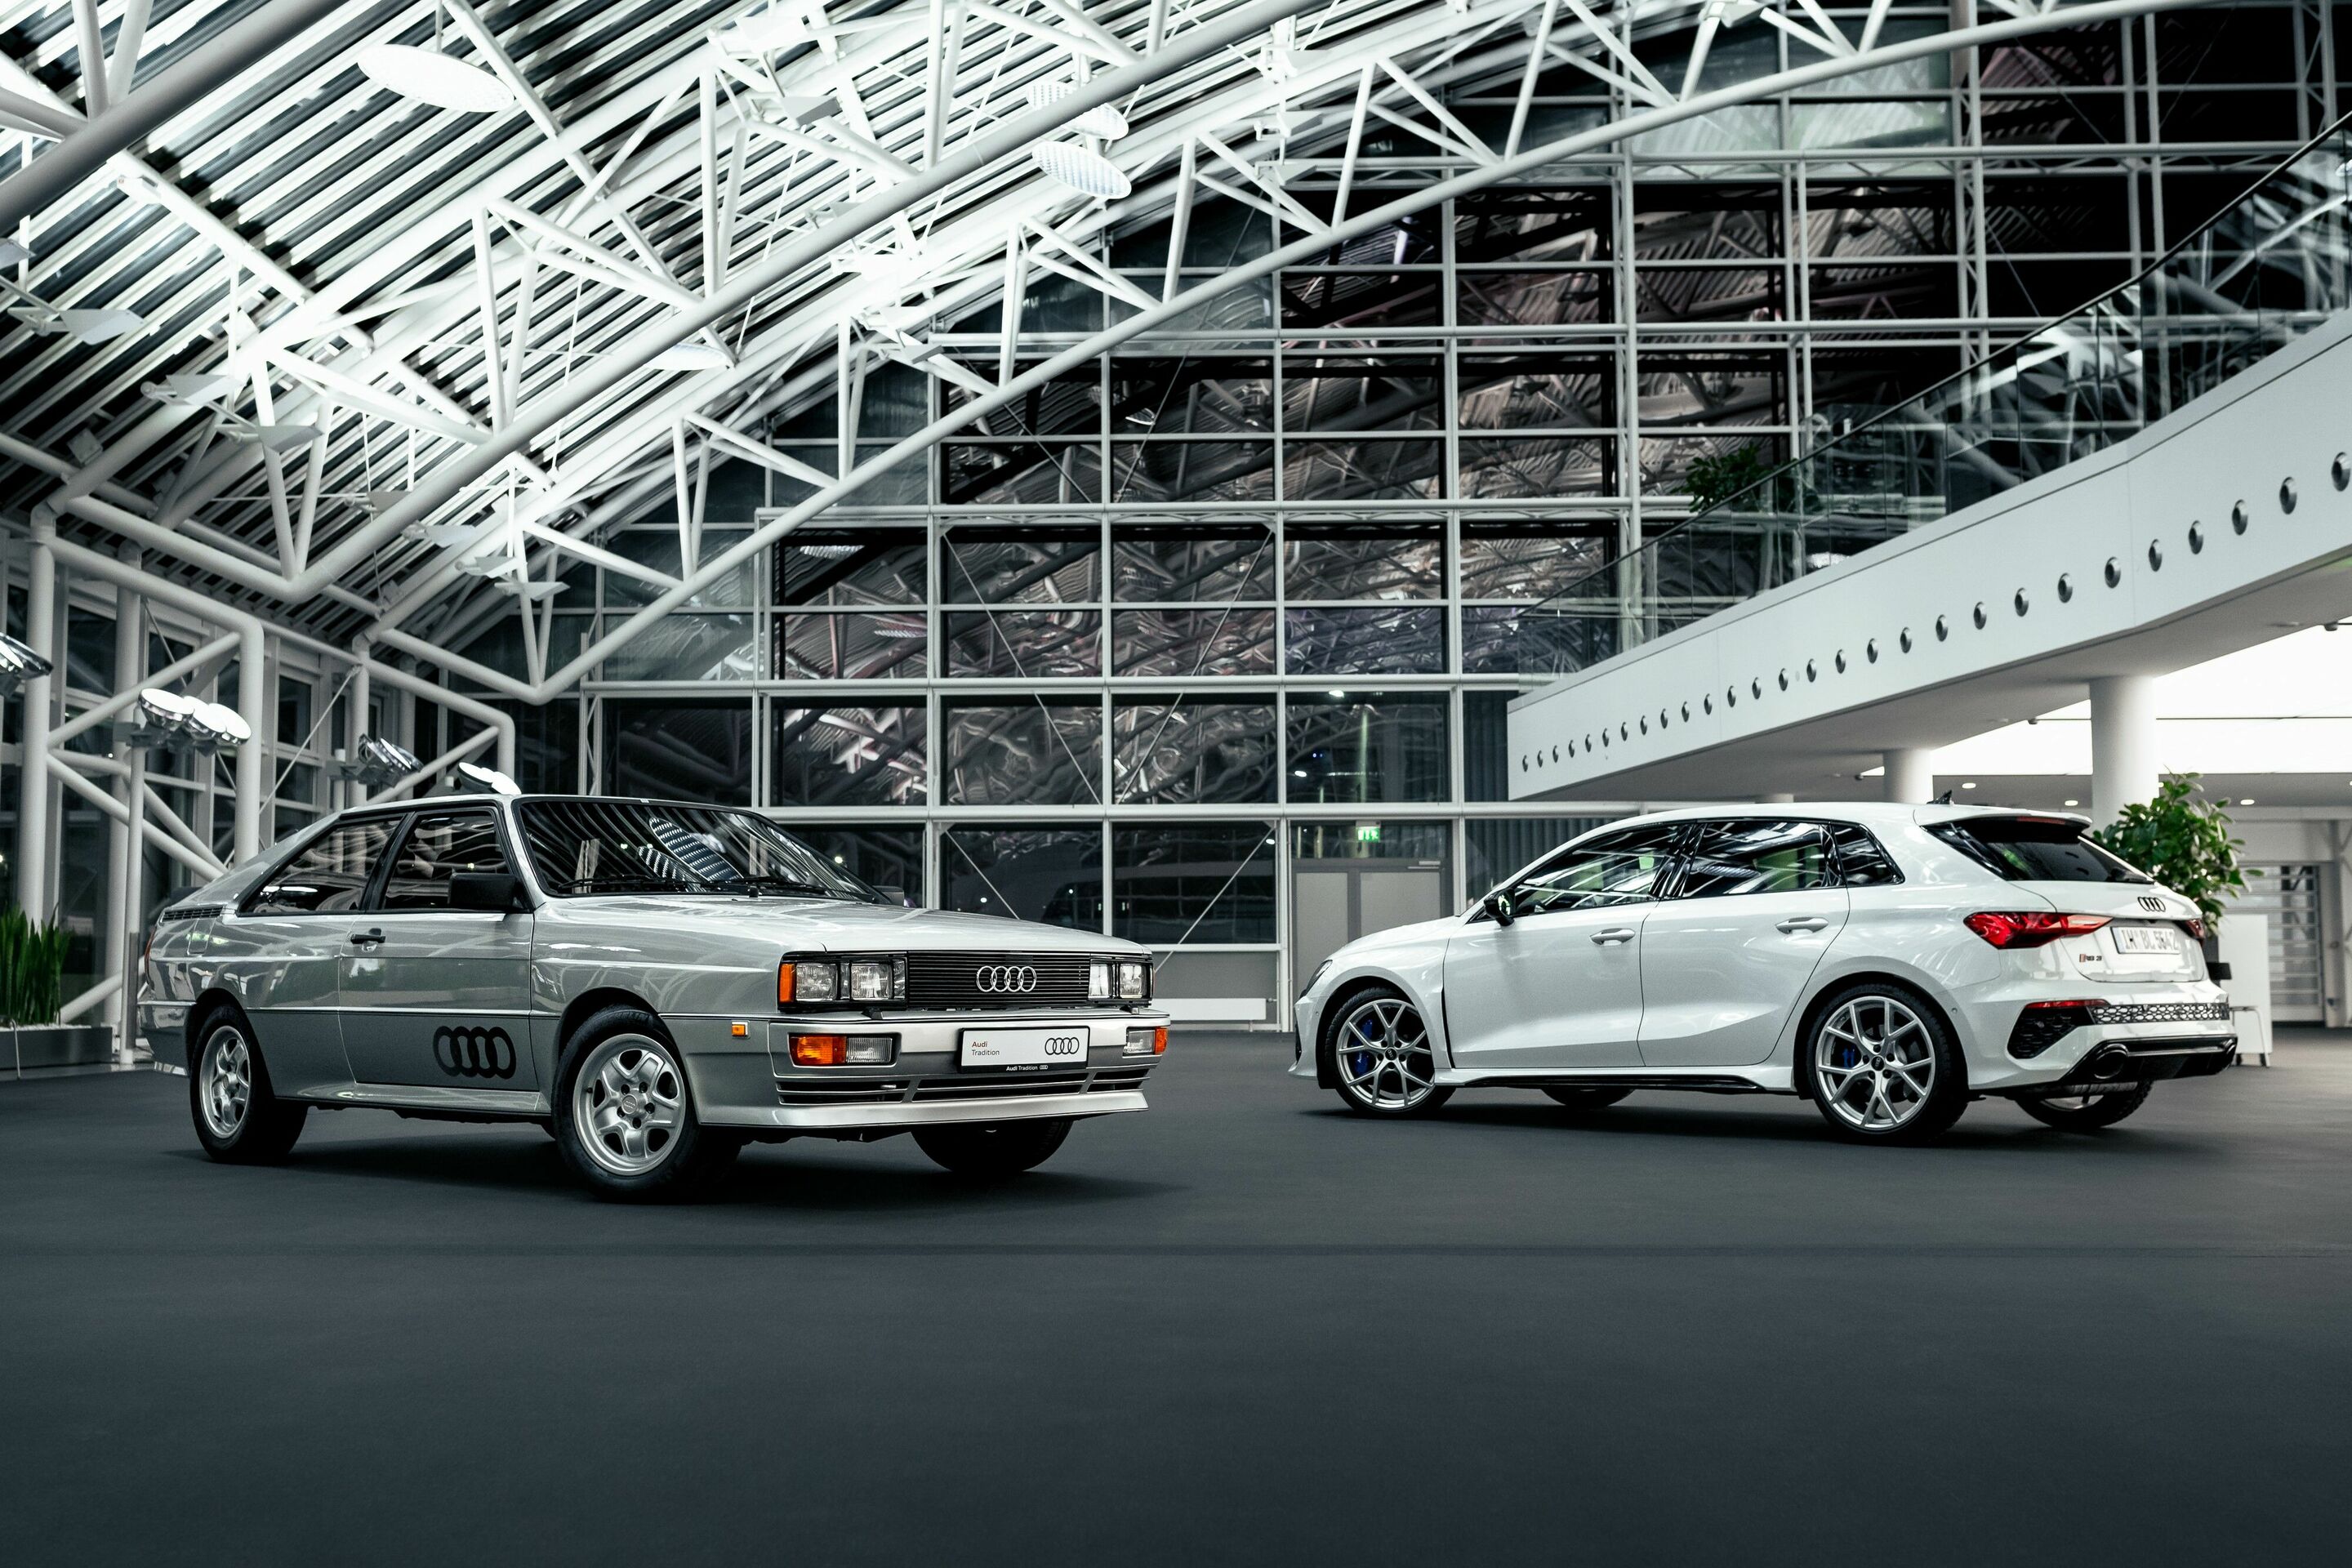 Vergangenheit und Gegenwart – Zwei Generationen quattro und Fünfzylinder gehören zur Audi DNA „Vorsprung durch Technik“